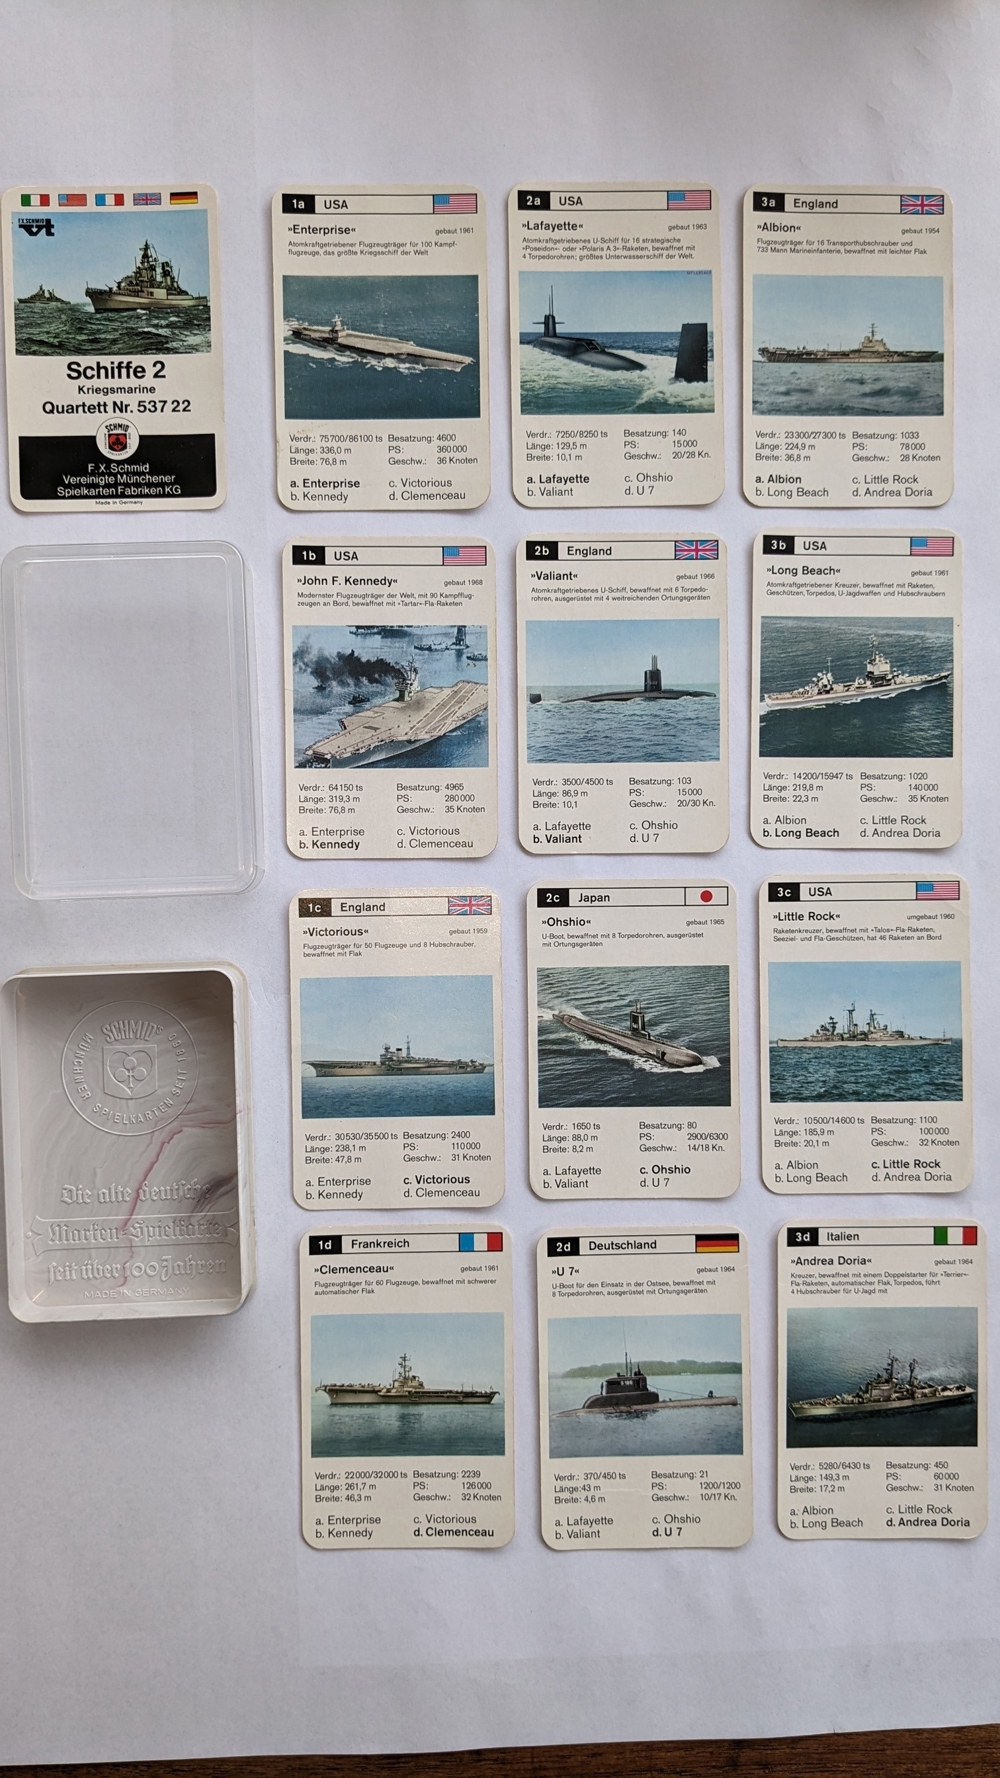 Quartett Nr. 53722 Schiffe 2 Kriegsmarine F.X.Schmid Spielkarten